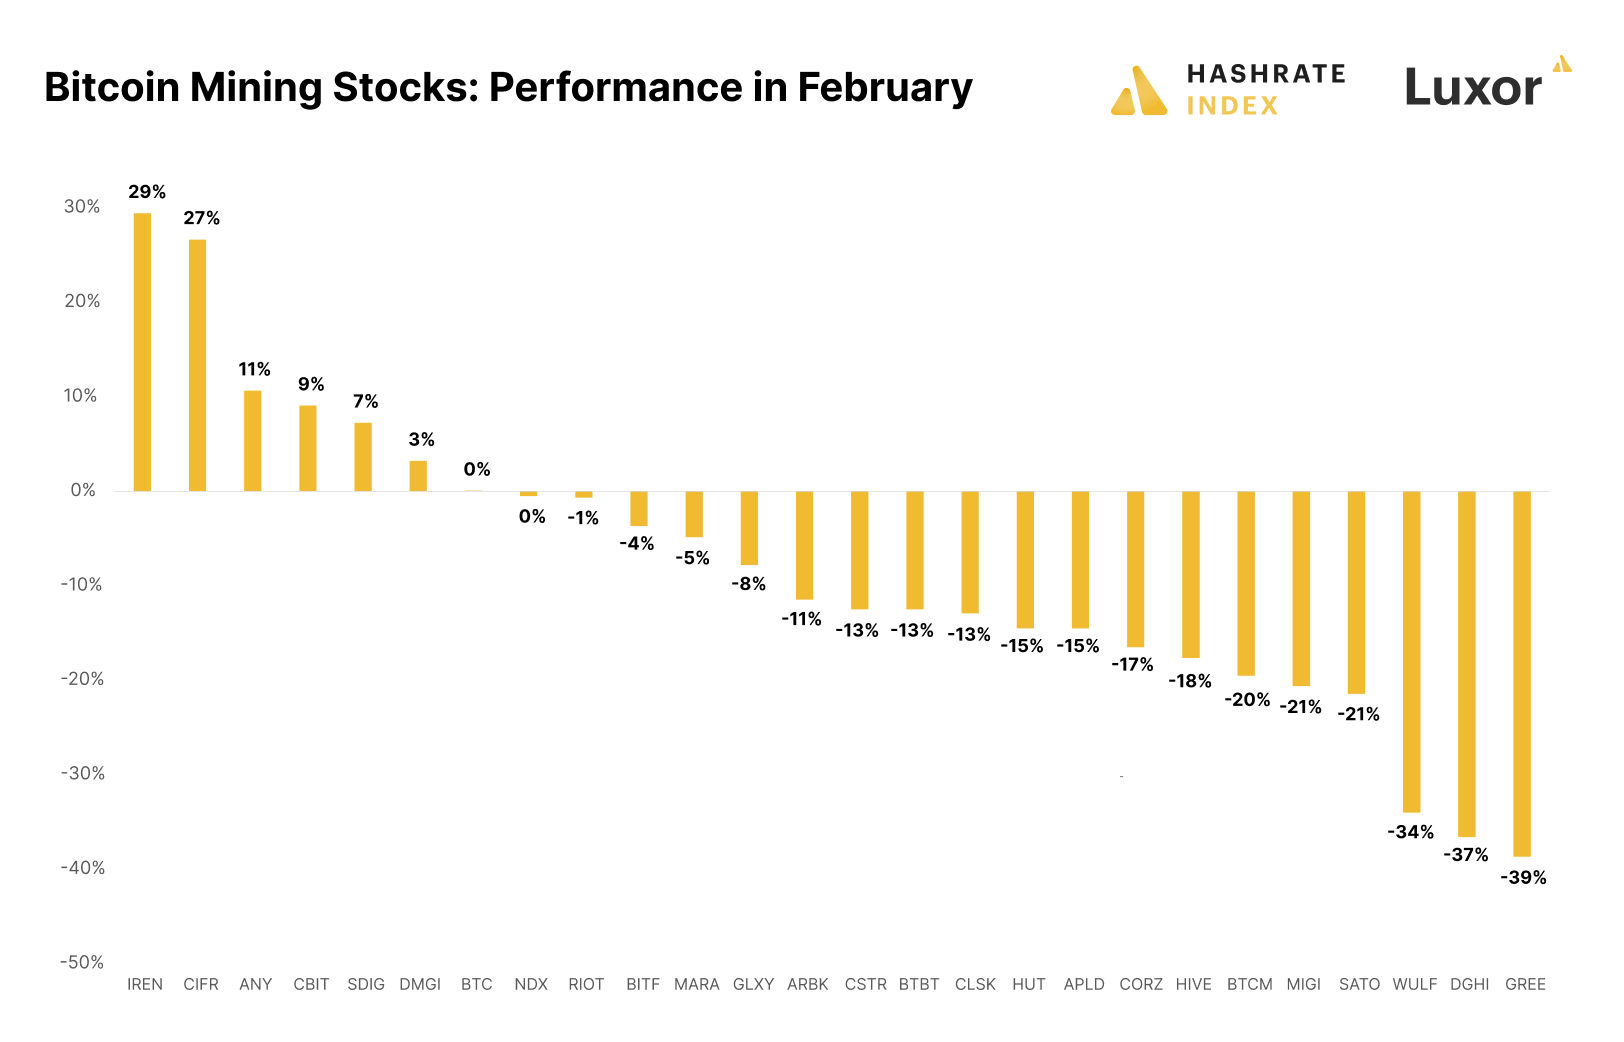 Desempenho das ações de mineração de Bitcoin em fevereiro (Fonte: Hashrate Index)